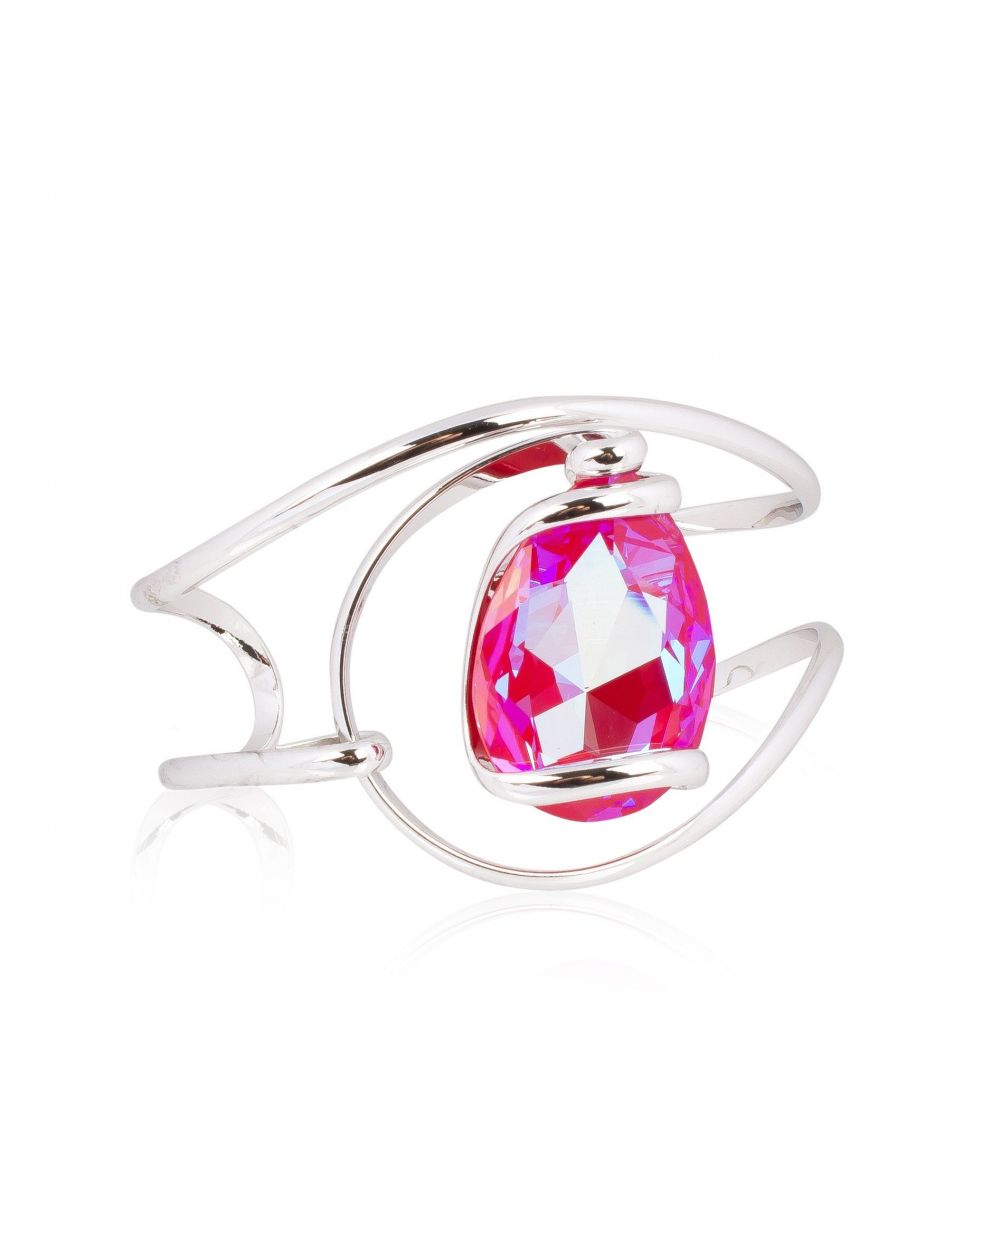 Andrea Marazzini bijoux - Bracelet cristal Swarovski Red Delite